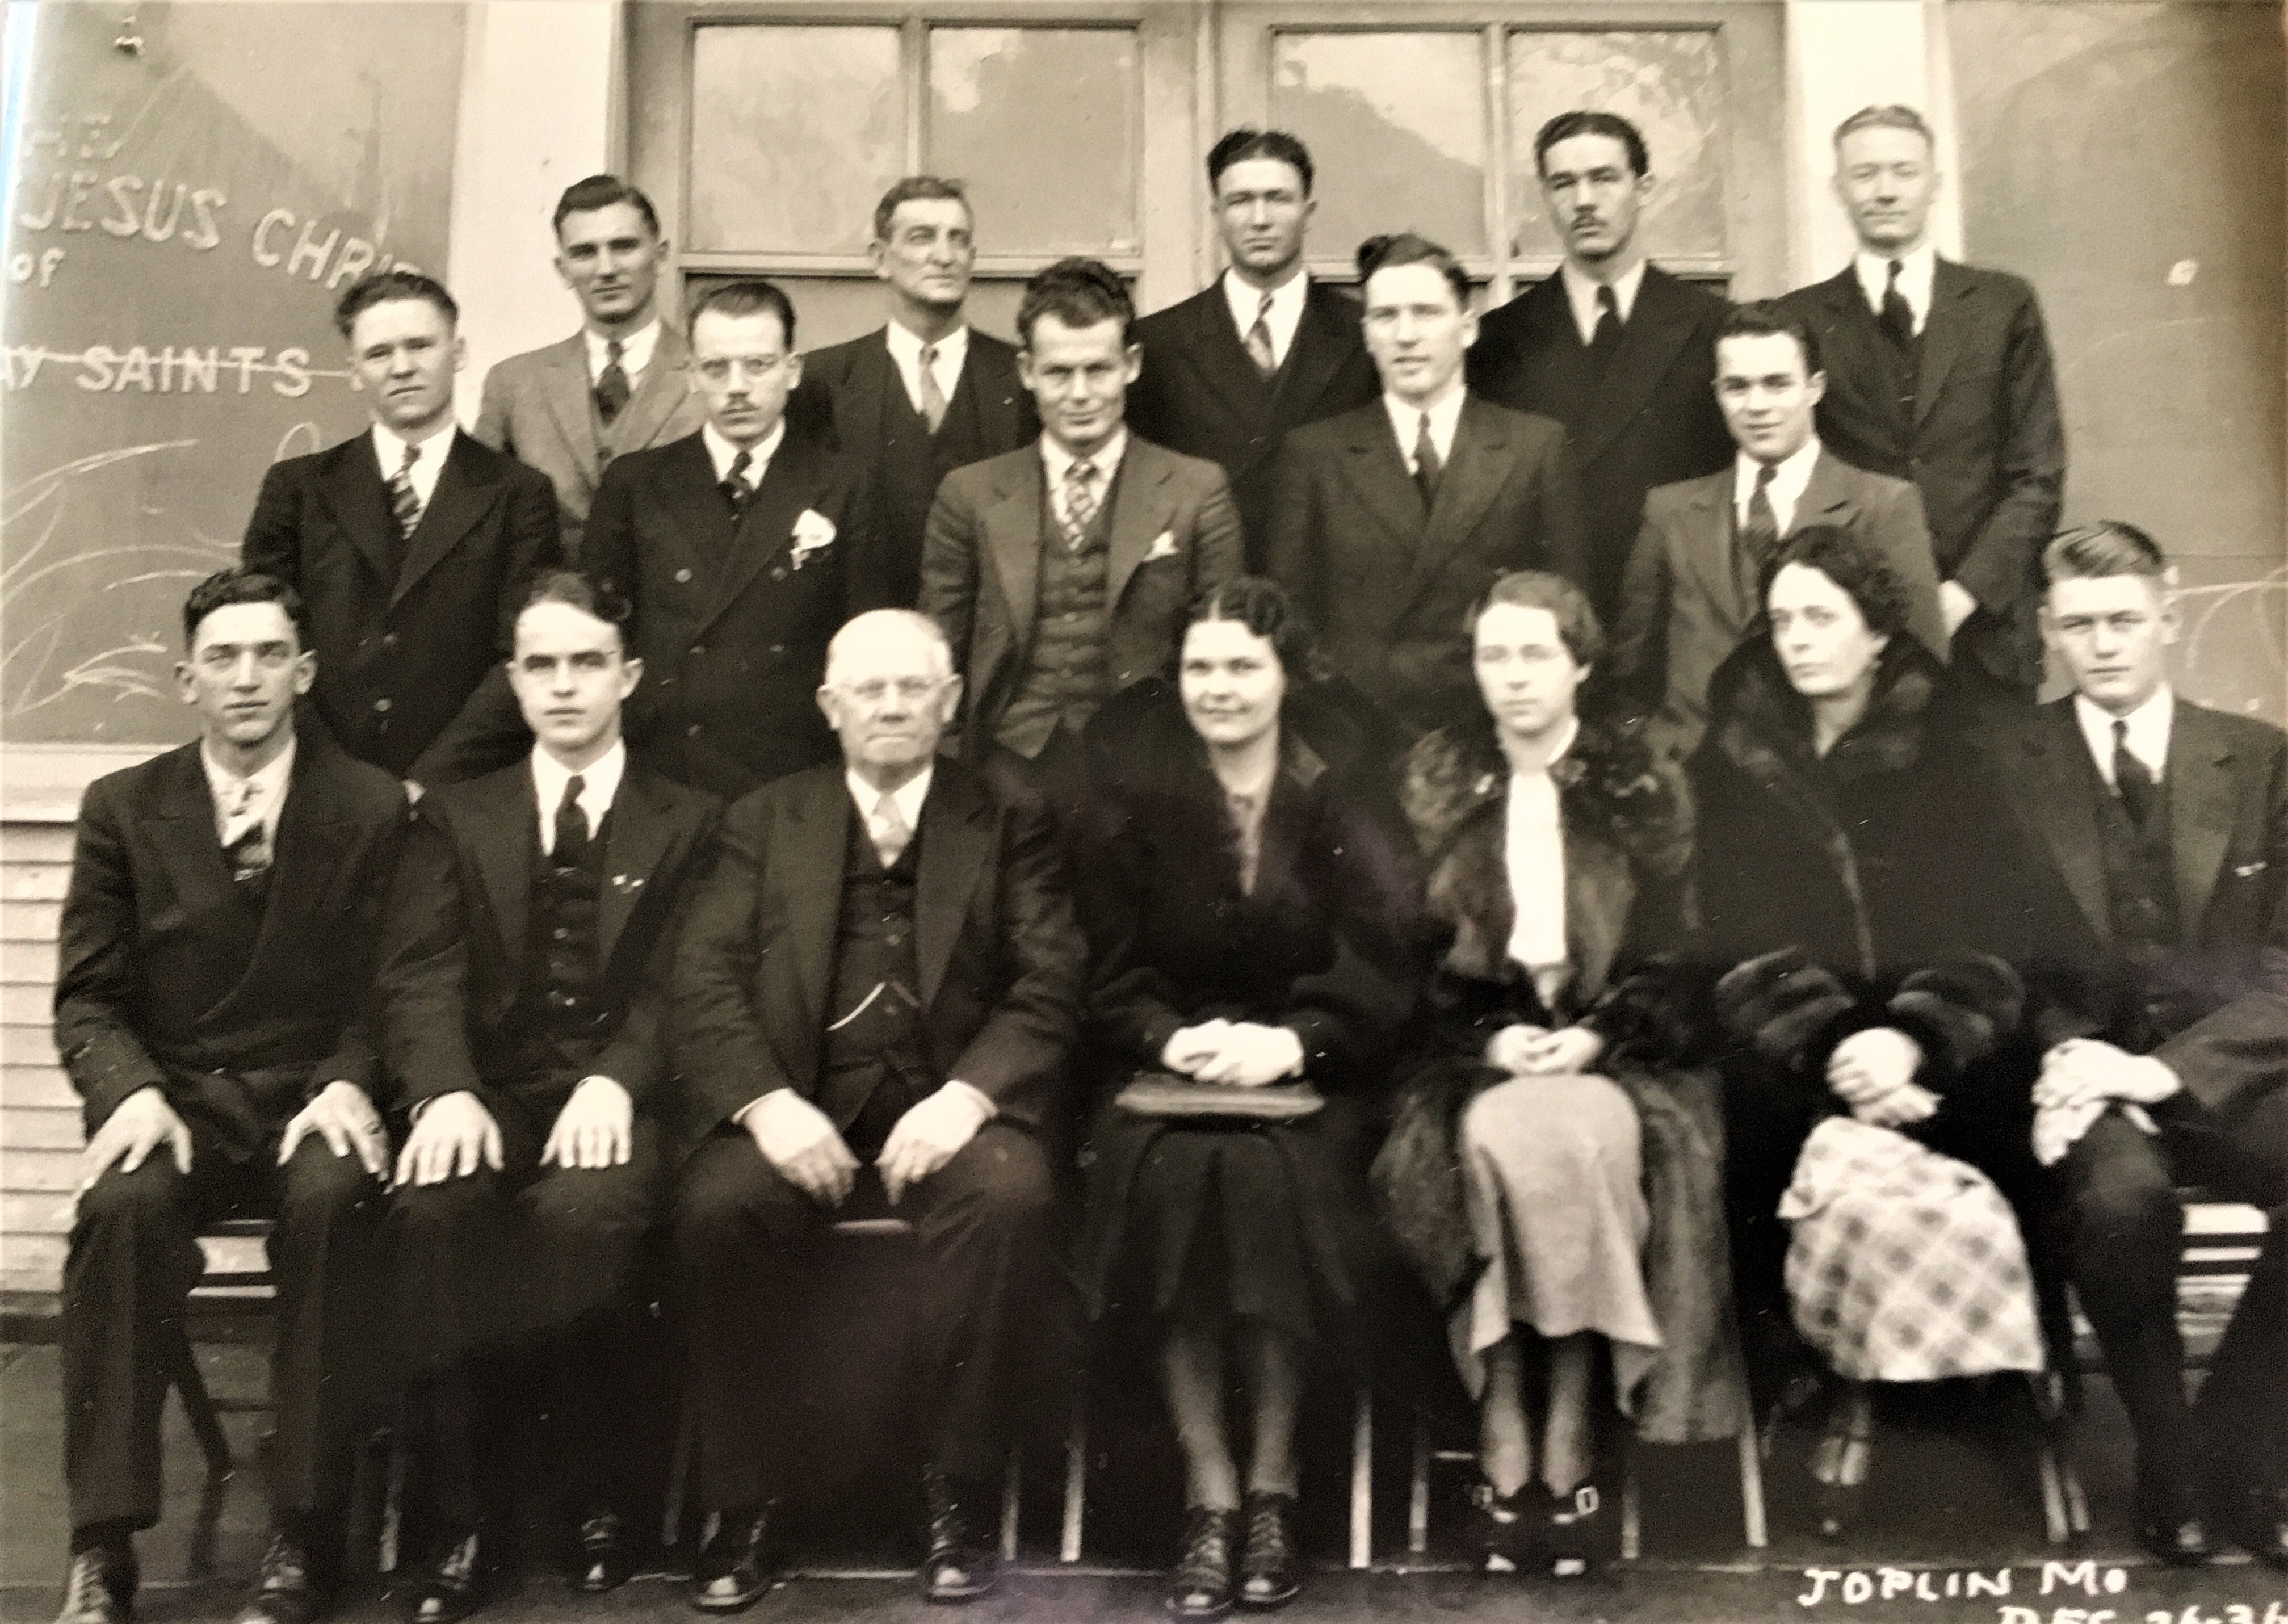 Central States Missionaries, Joplin, Missouri